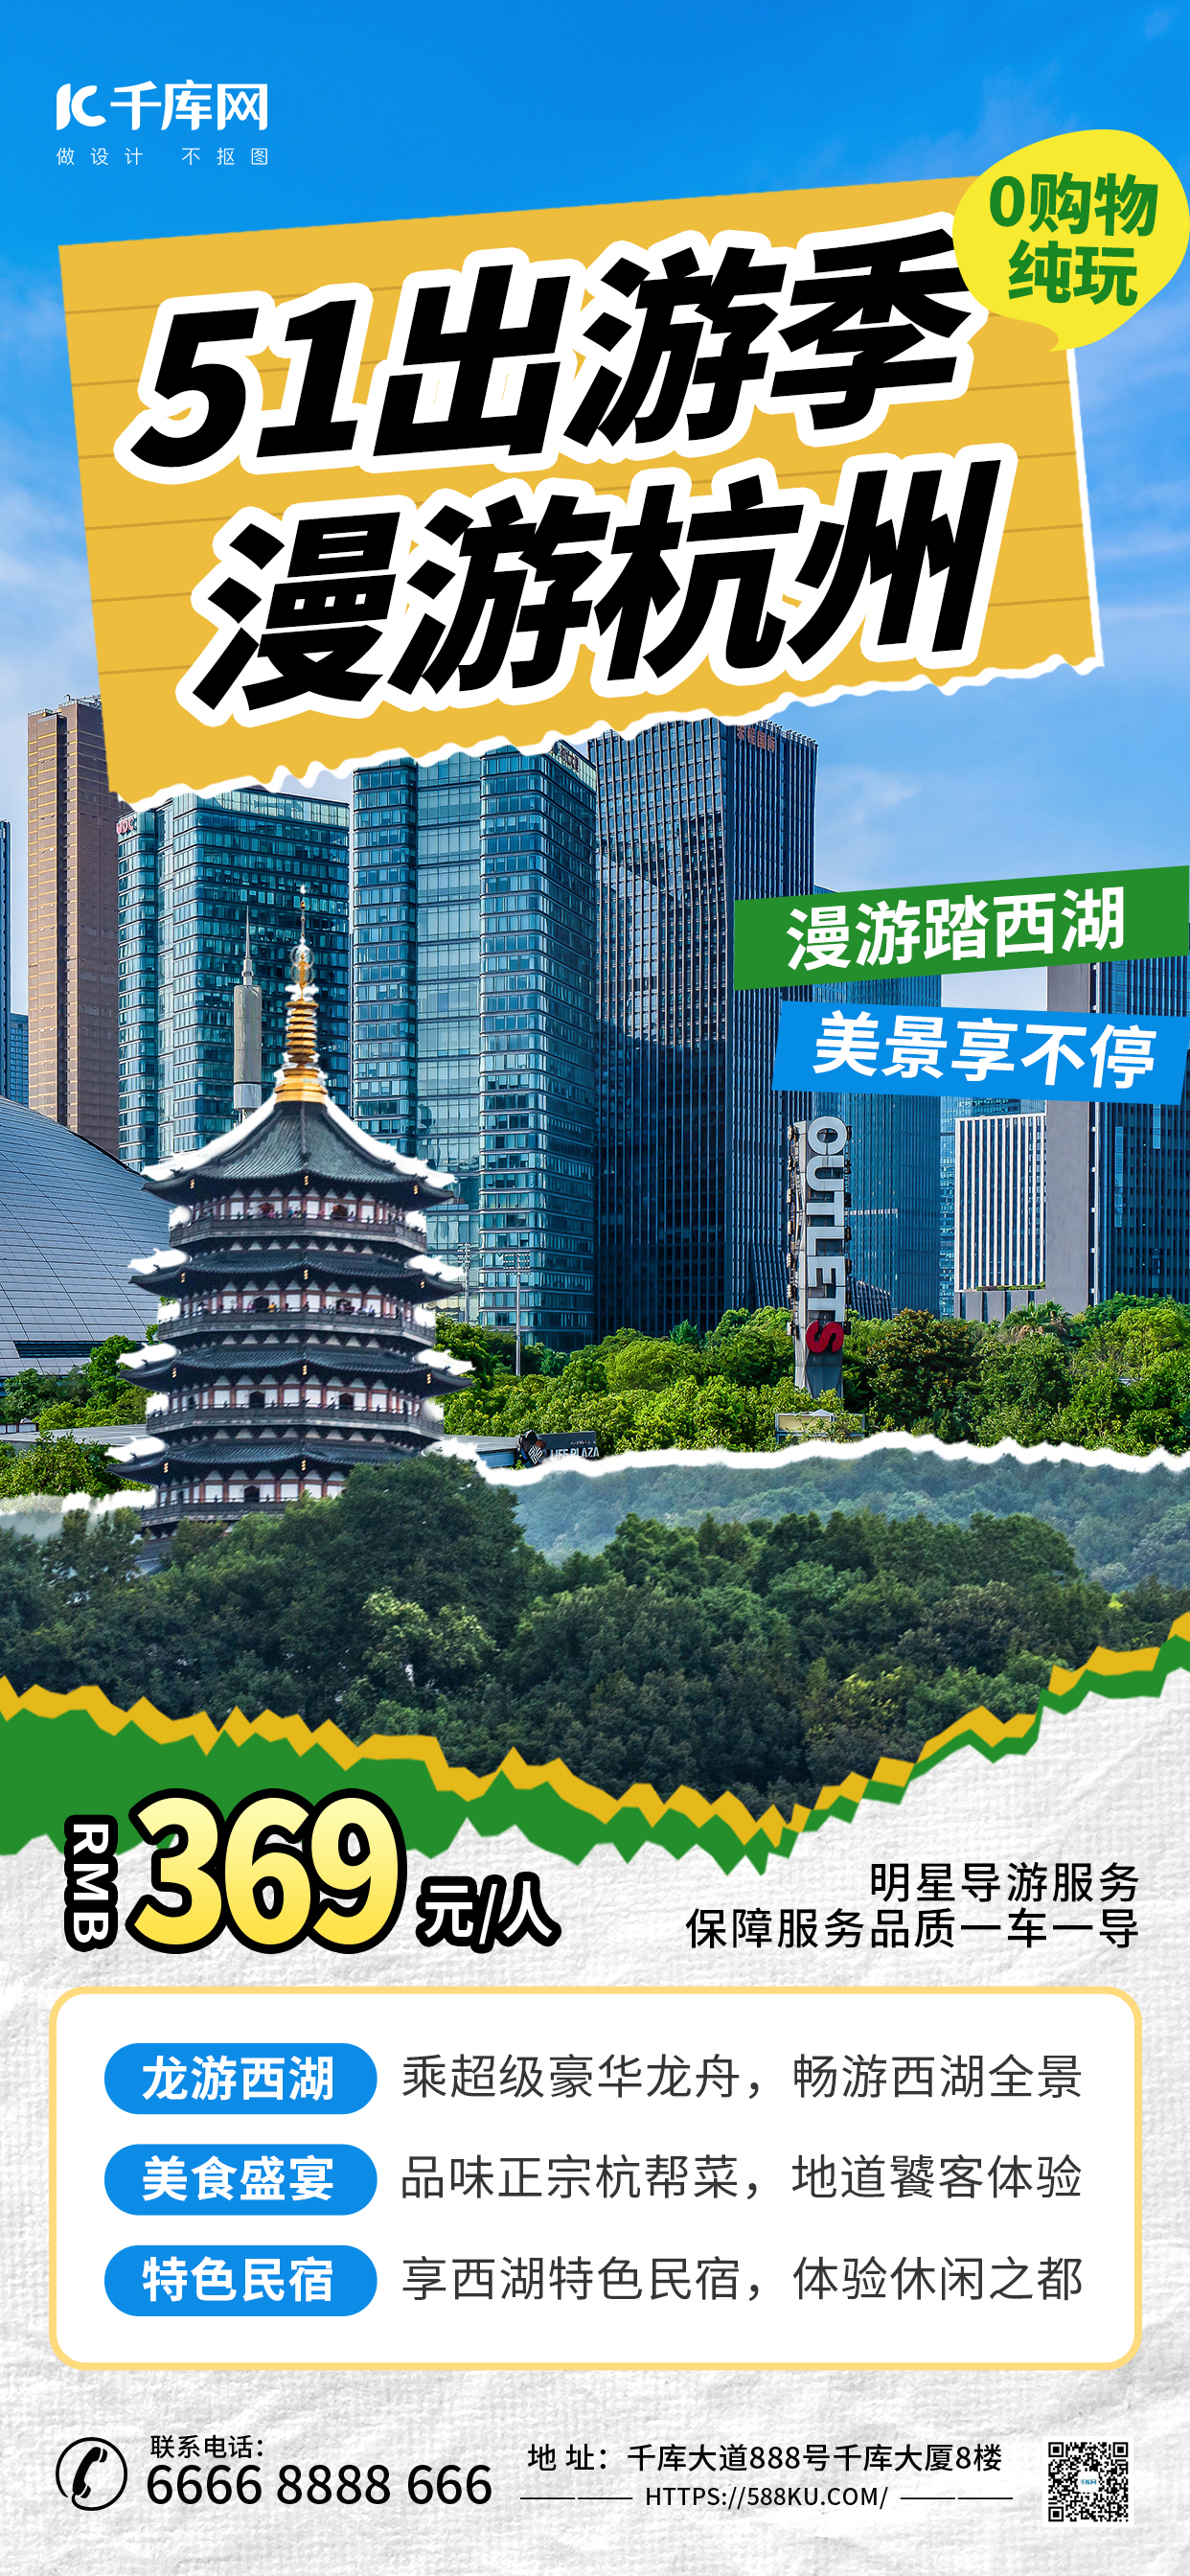 五一劳动节杭州旅行浅色撕纸海报海报设计模板图片